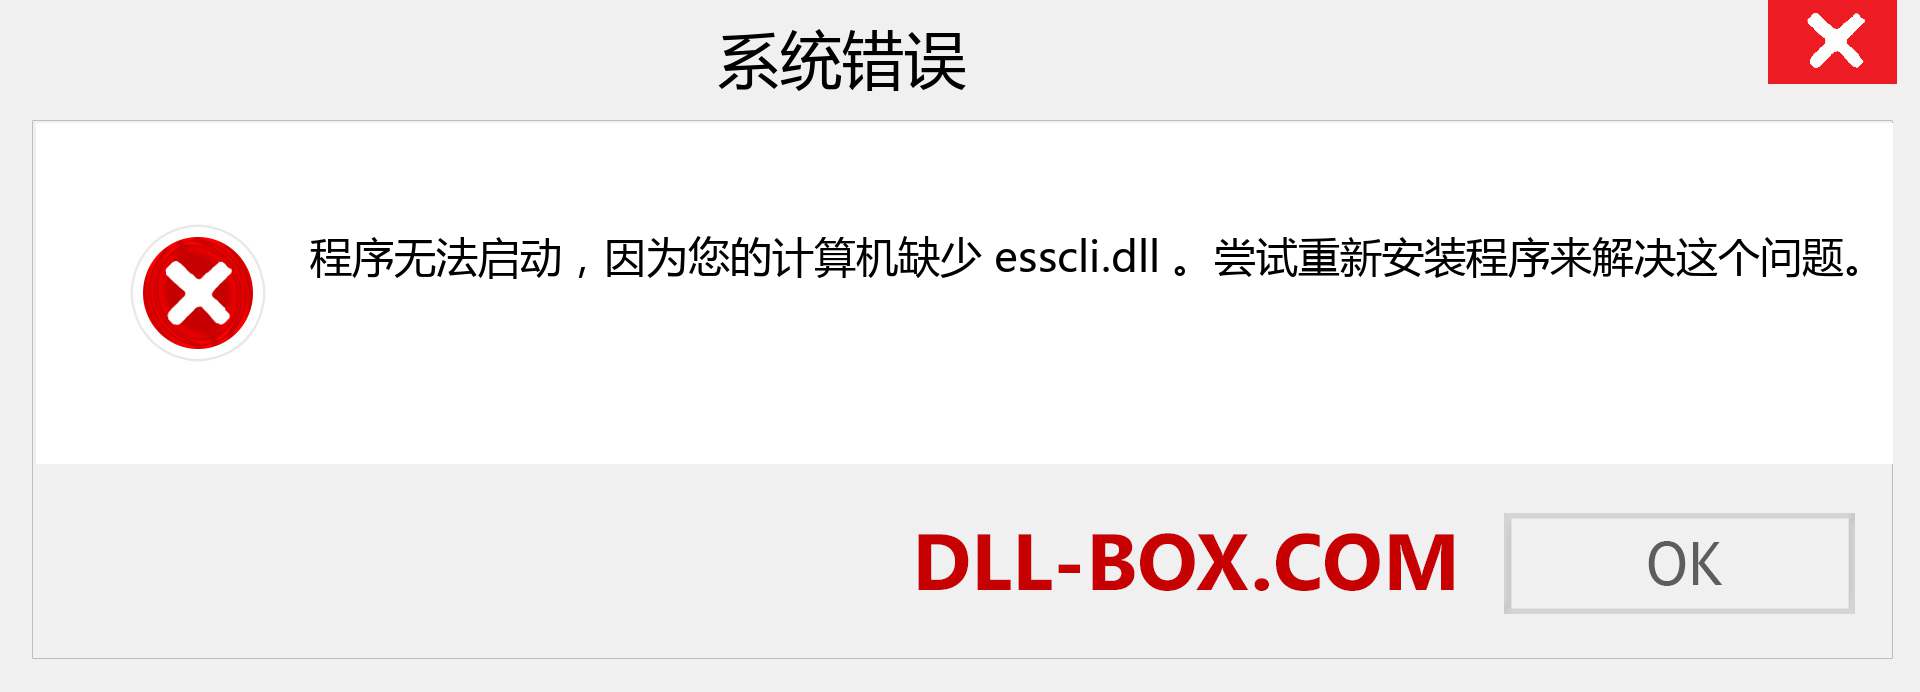 esscli.dll 文件丢失？。 适用于 Windows 7、8、10 的下载 - 修复 Windows、照片、图像上的 esscli dll 丢失错误